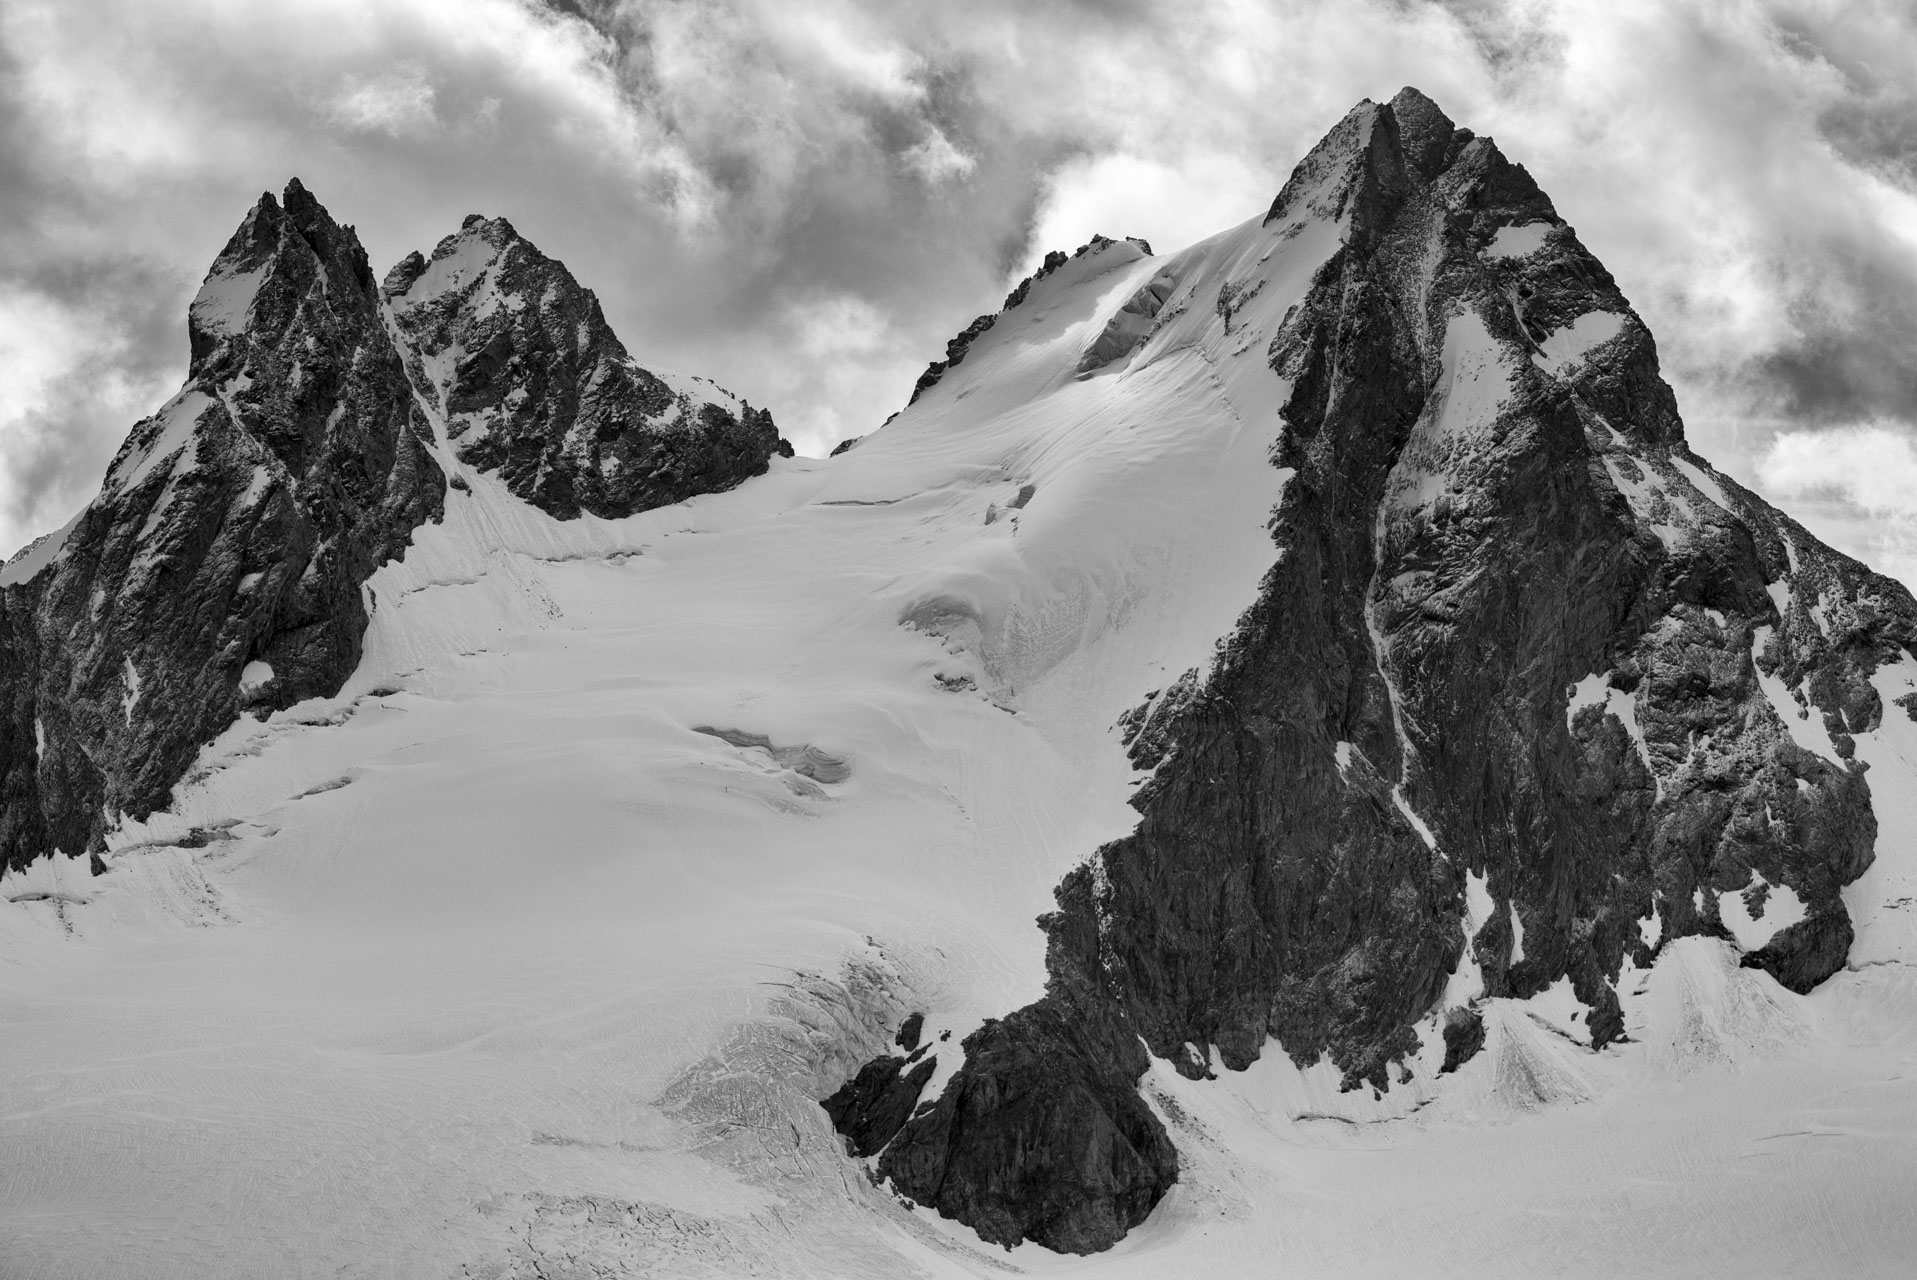 Val d'hérens mountain landscape images - Val d'hérens in swiss Alps - L'évèque